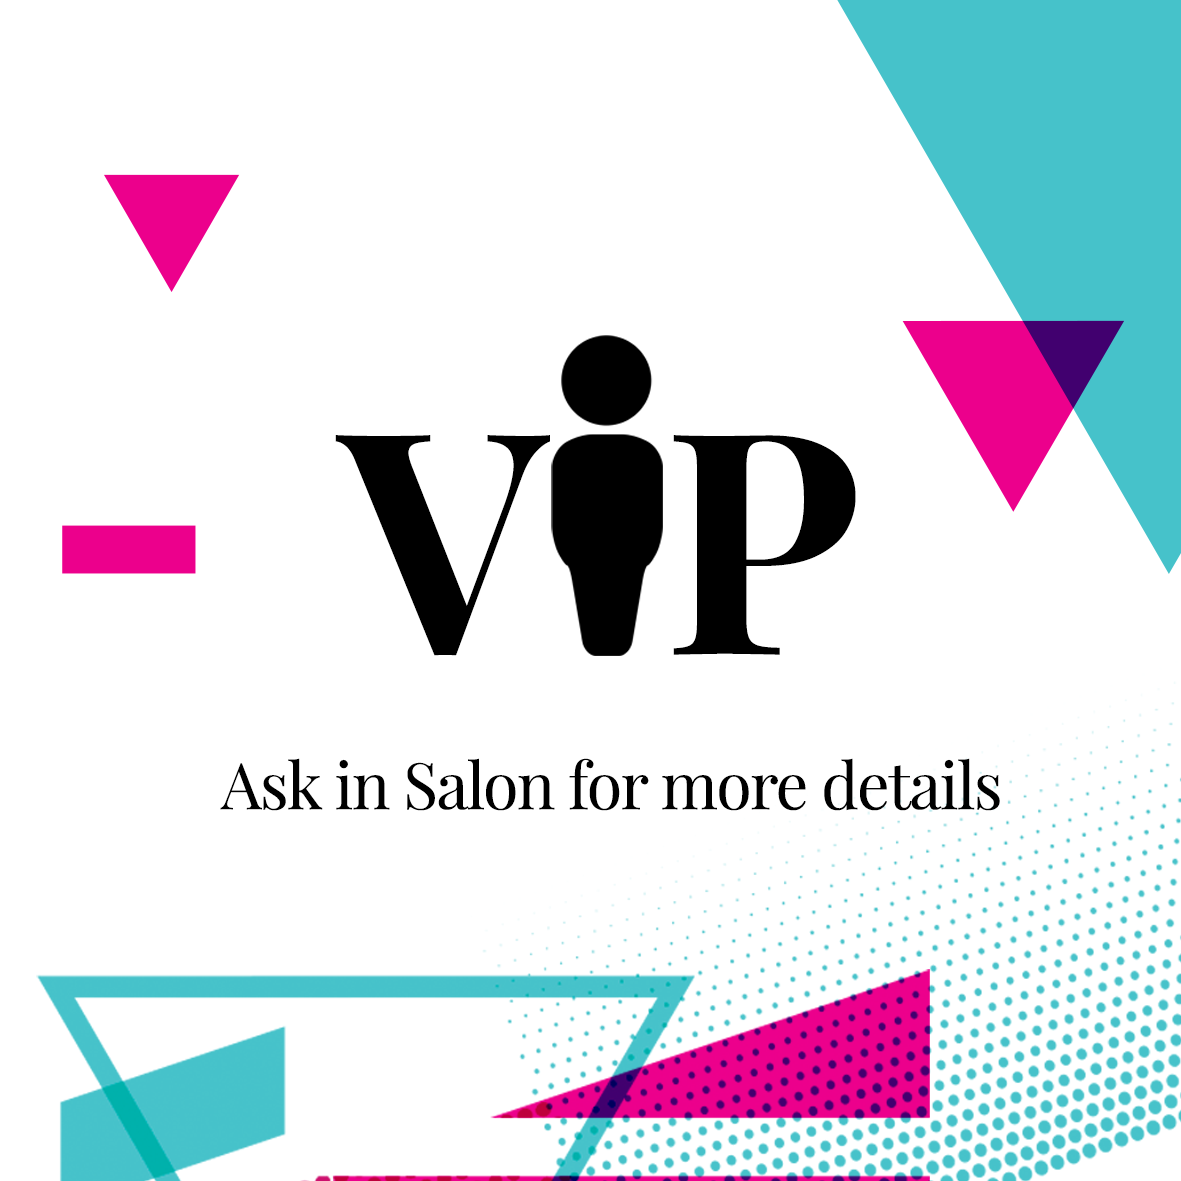 VIP ask in salon image